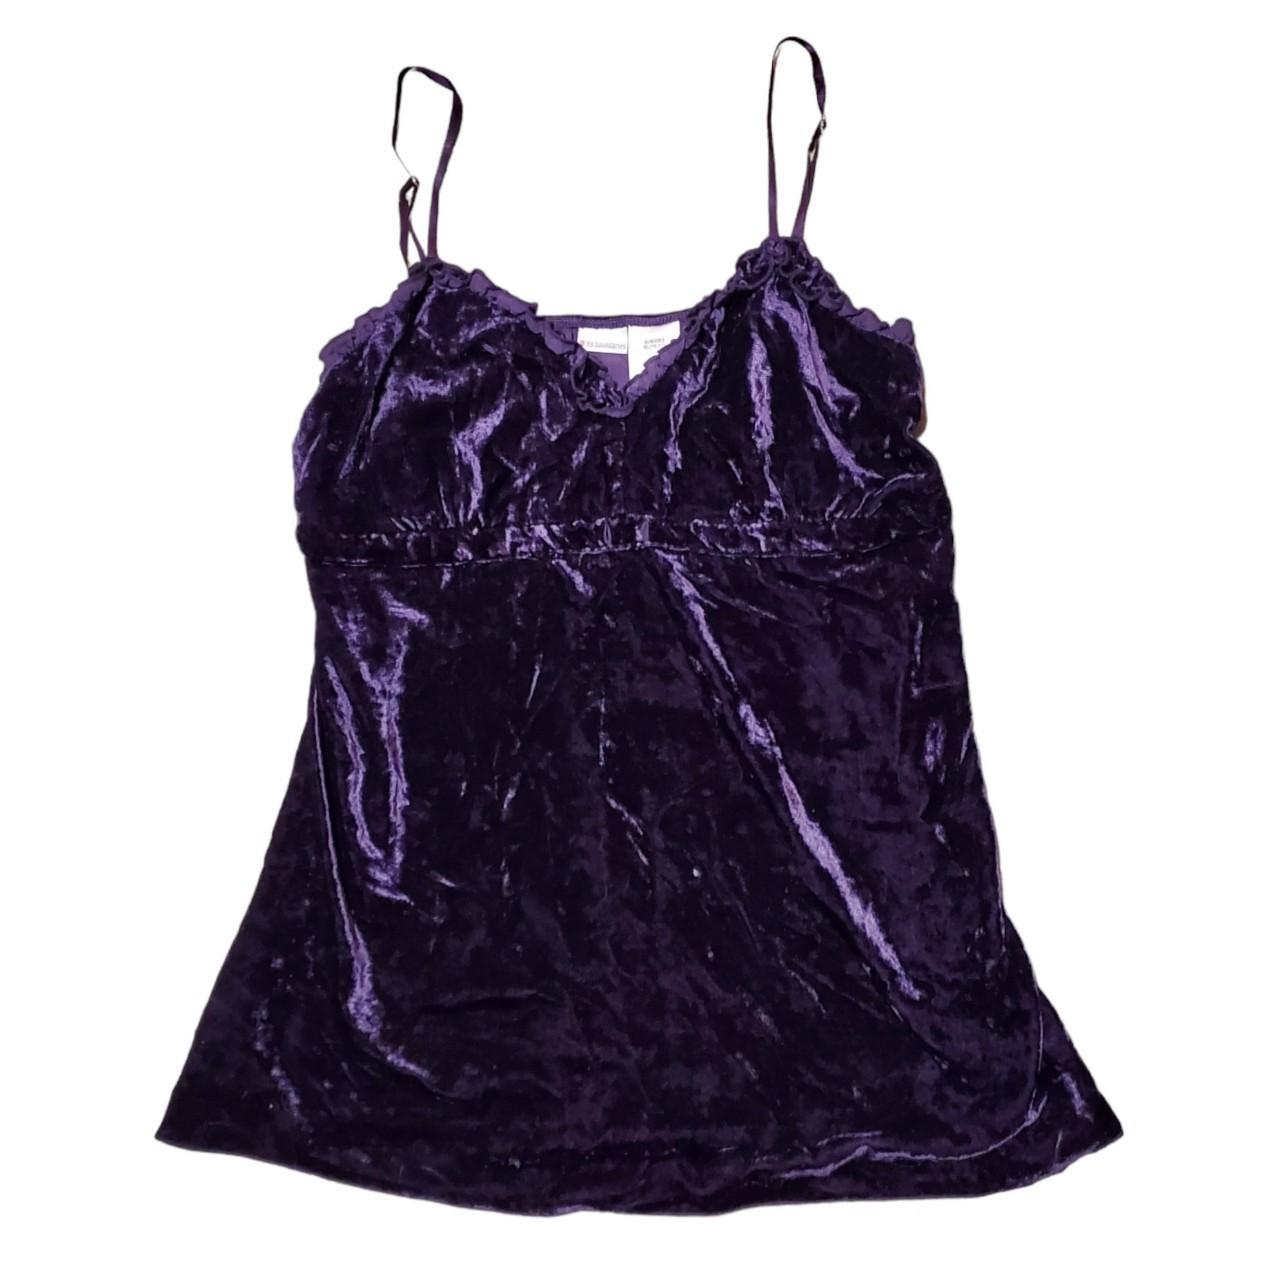 Whimsigoth velvet purple minidress /... - Depop